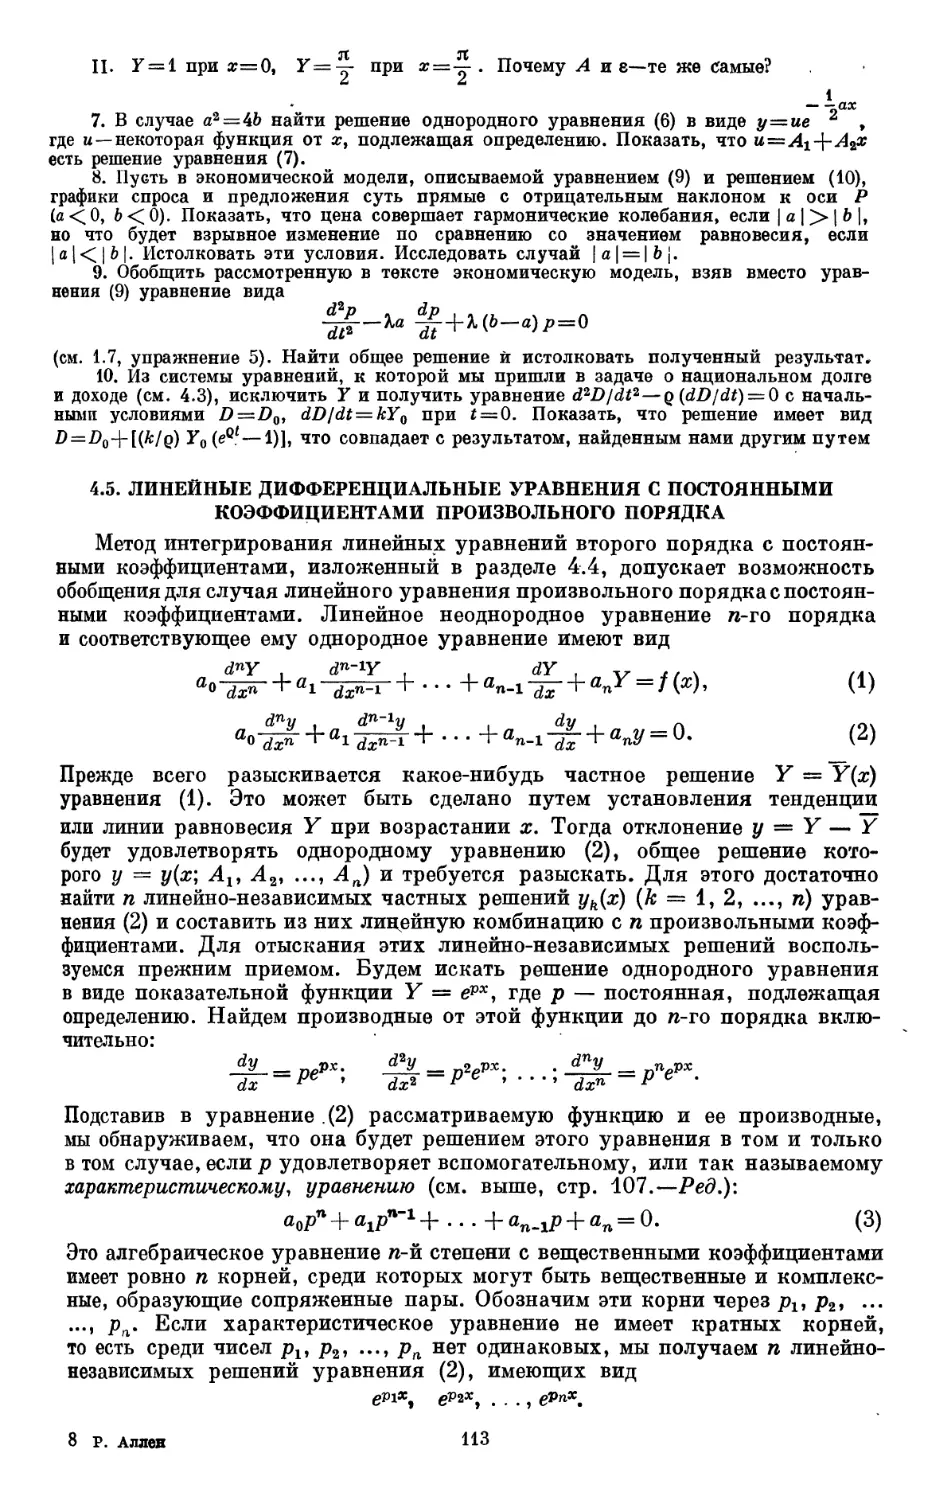 4.5. Линейные дифференциальные уравнения с постоянными коэффициентами произвольного порядка